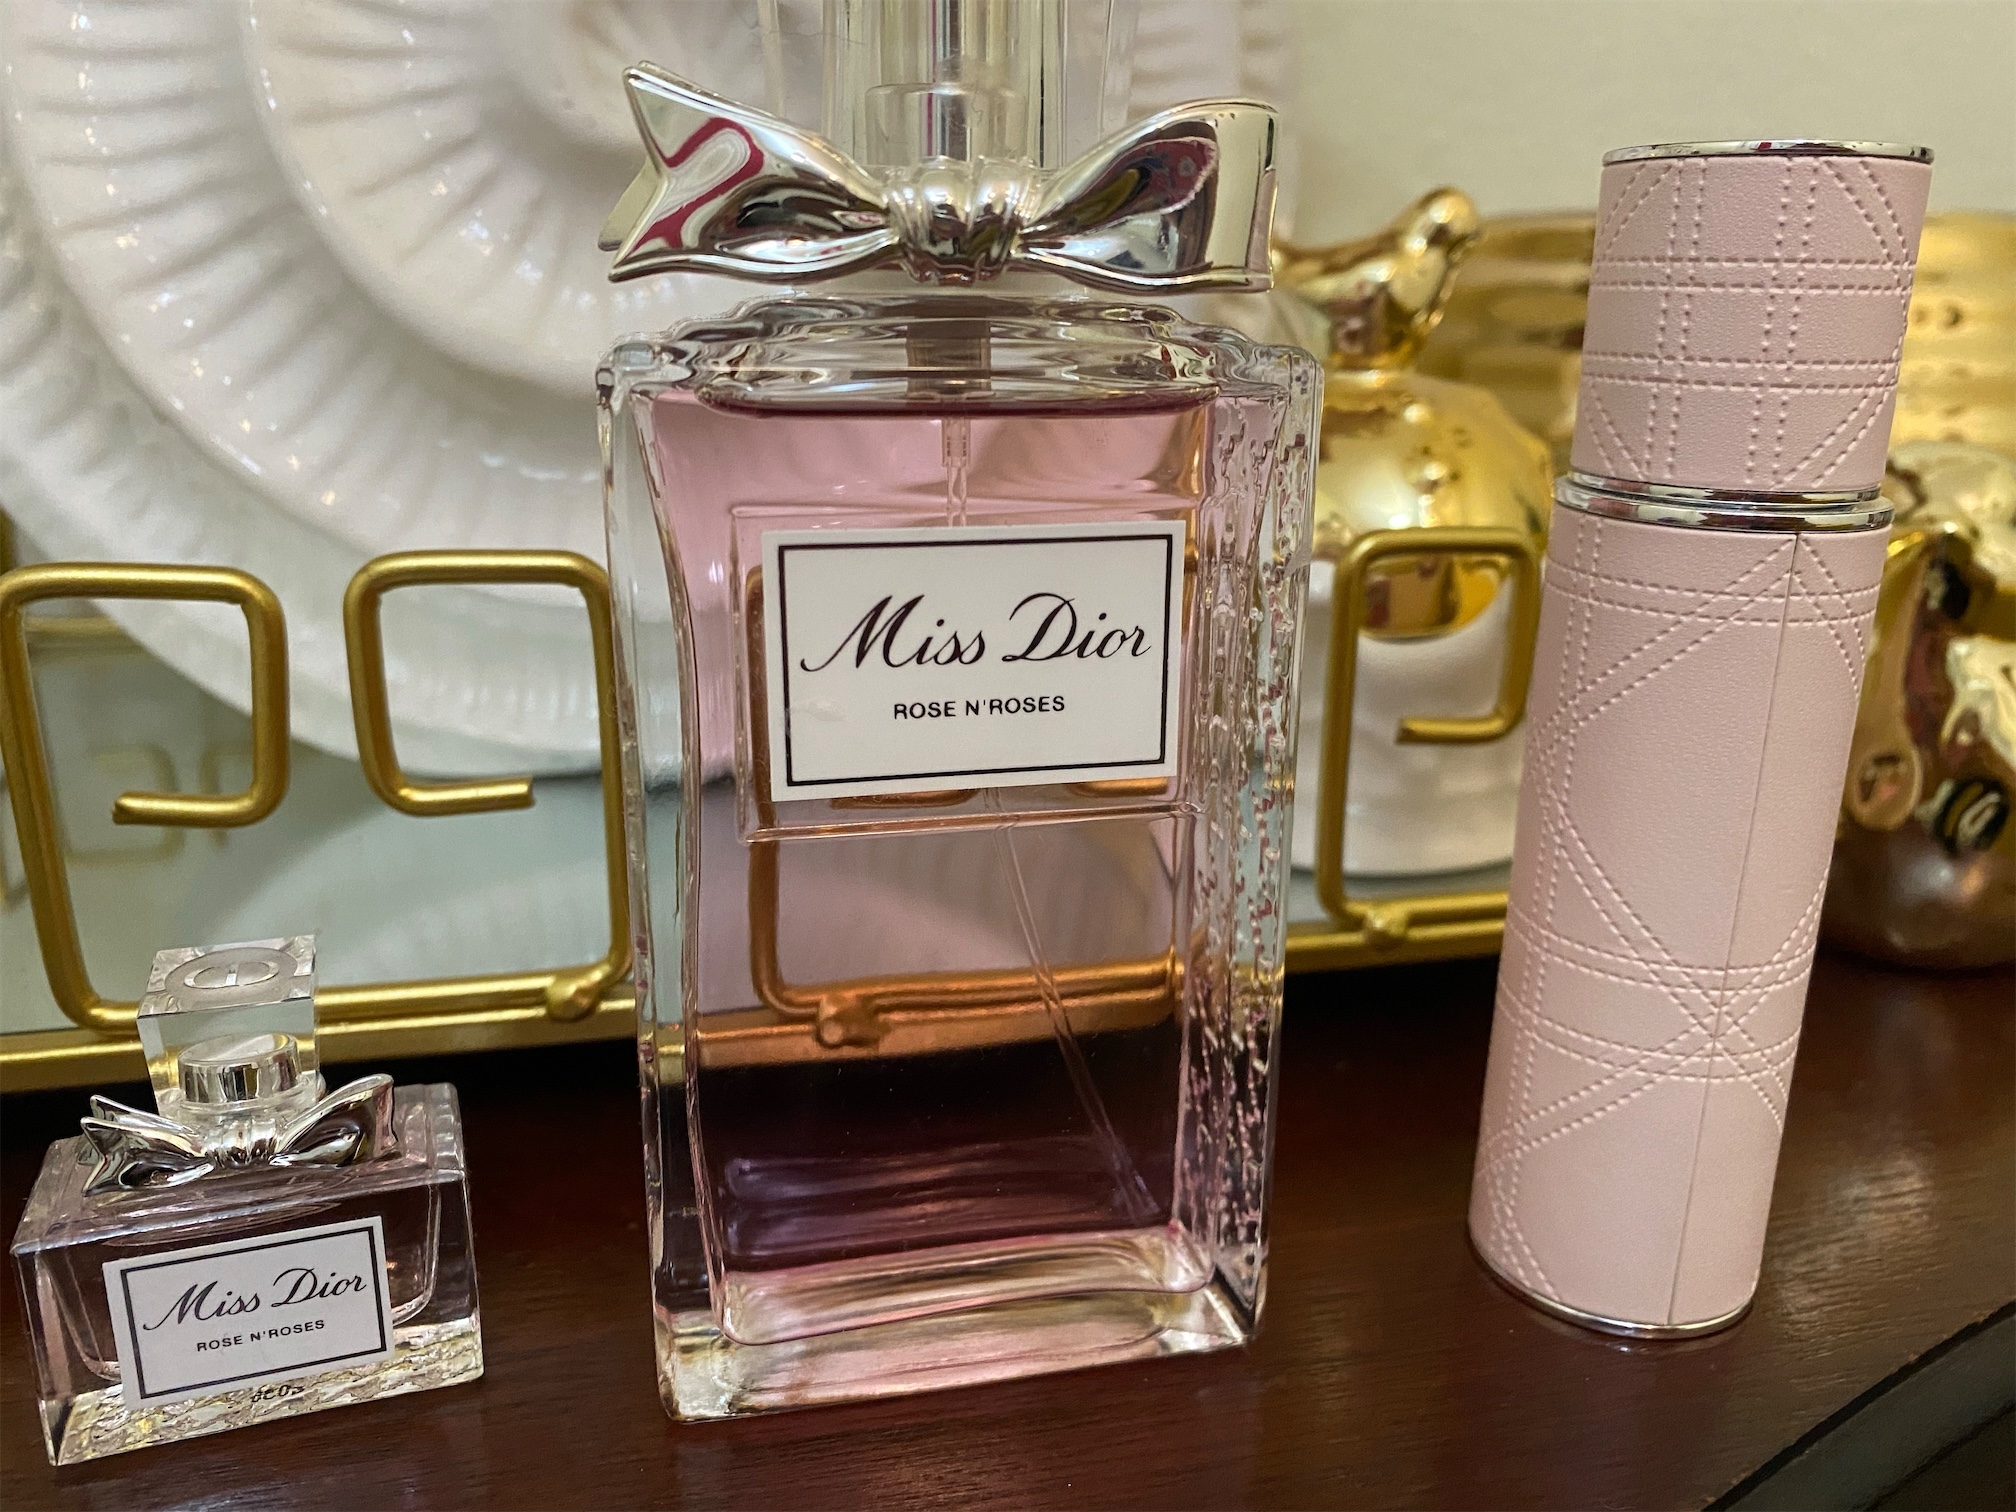 salud y belleza - Perfume miss Dior